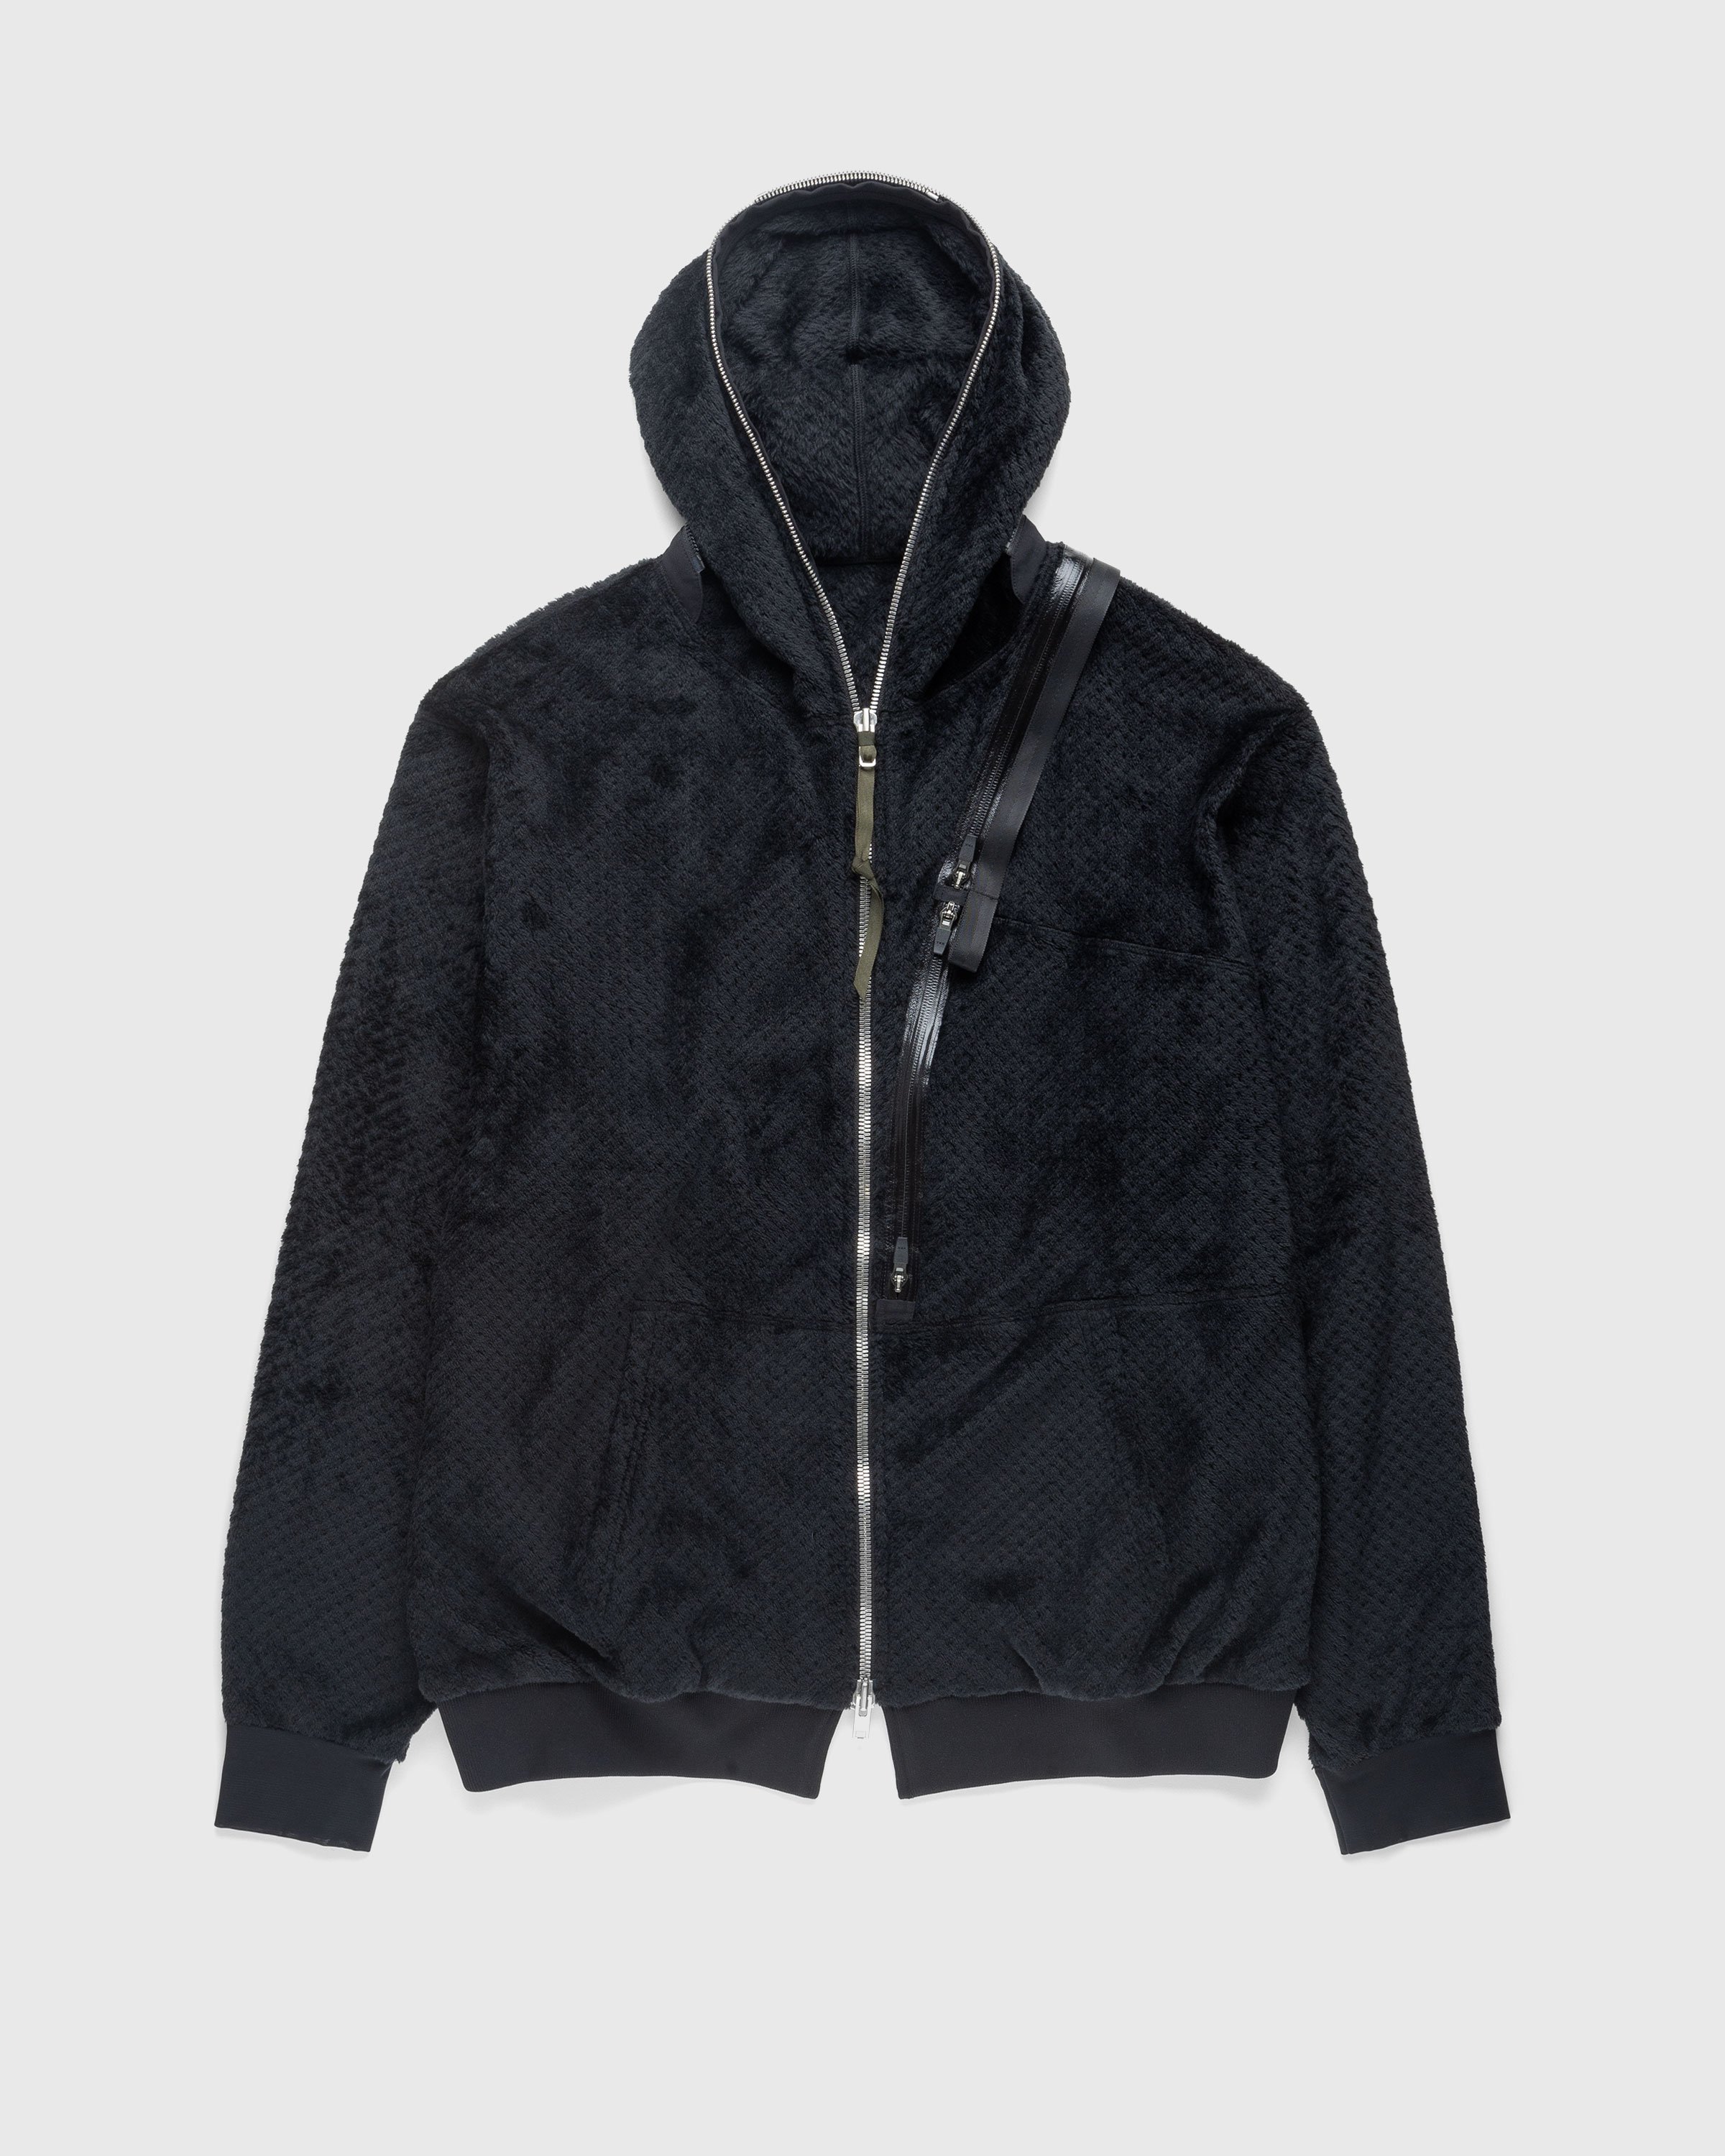 ACRONYM – J117-HL Jacket Black | Highsnobiety Shop